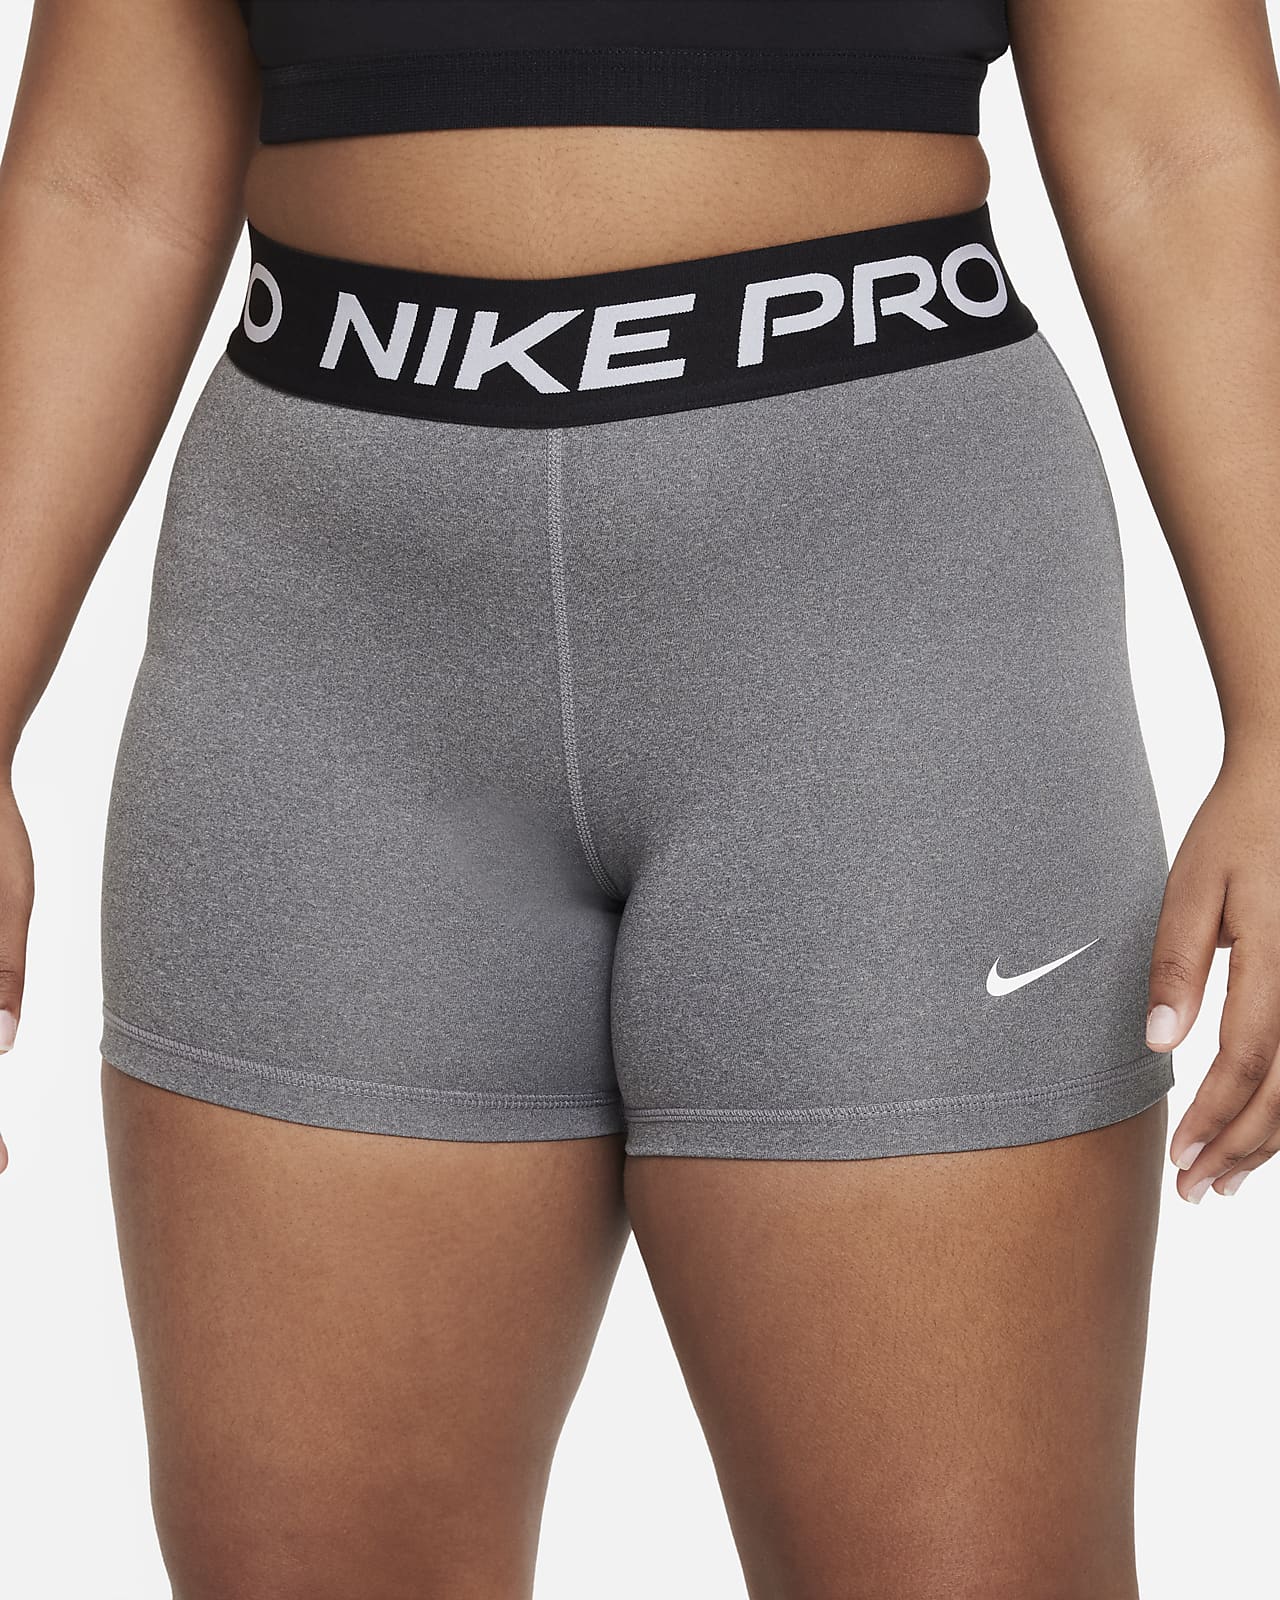 Nike Pro Shorts Grey